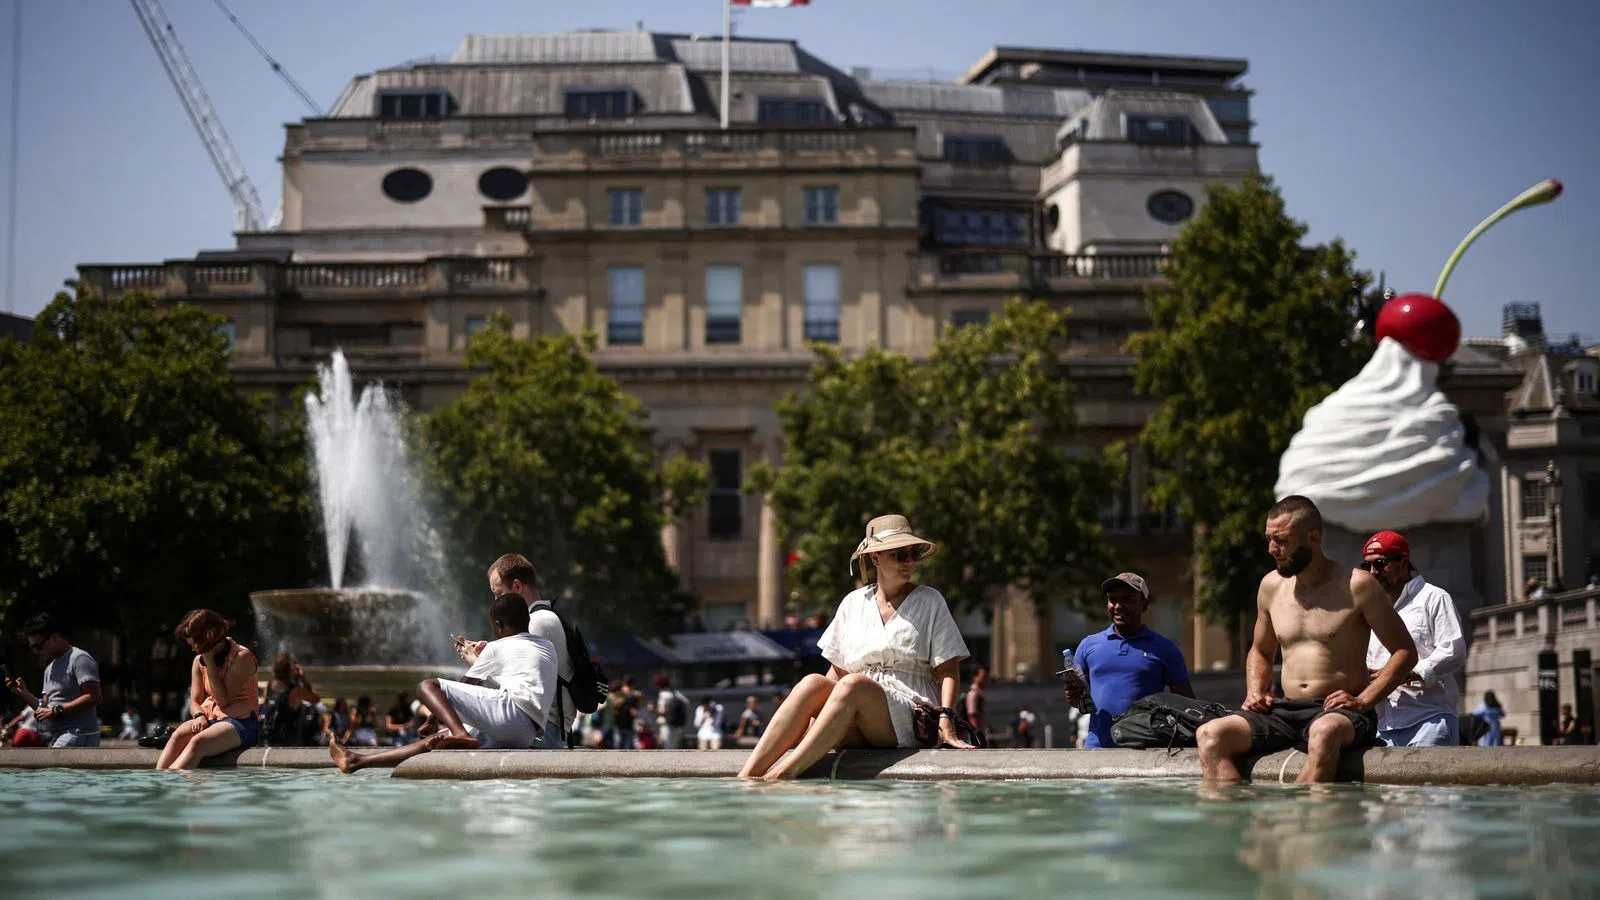 Các đài phun nước ở Quảng trường Trafalgar rất hữu ích cho những người ở London thời điểm này.